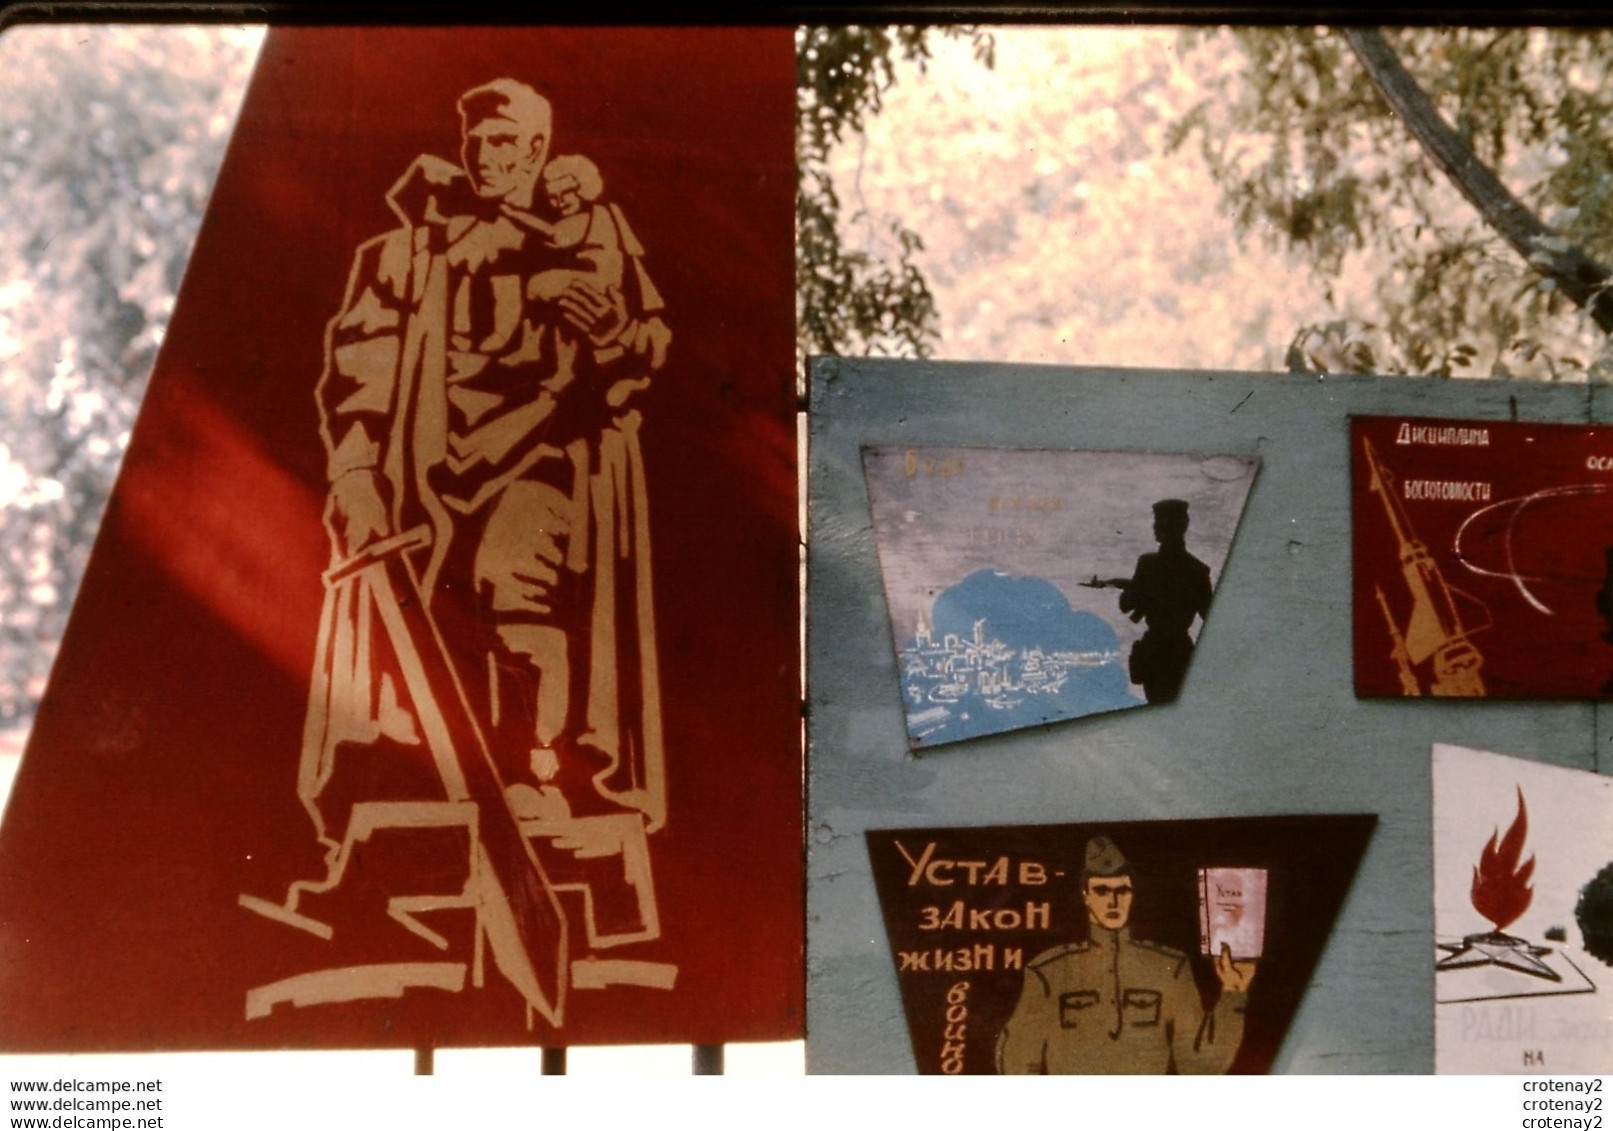 Photo Diapo Diapositive Slide URSS Depuis 1945 N°7 Une Armée Pour La Paix ? Académie FROUNZE MOSCOU En 1967  VOIR ZOOM - Diapositive